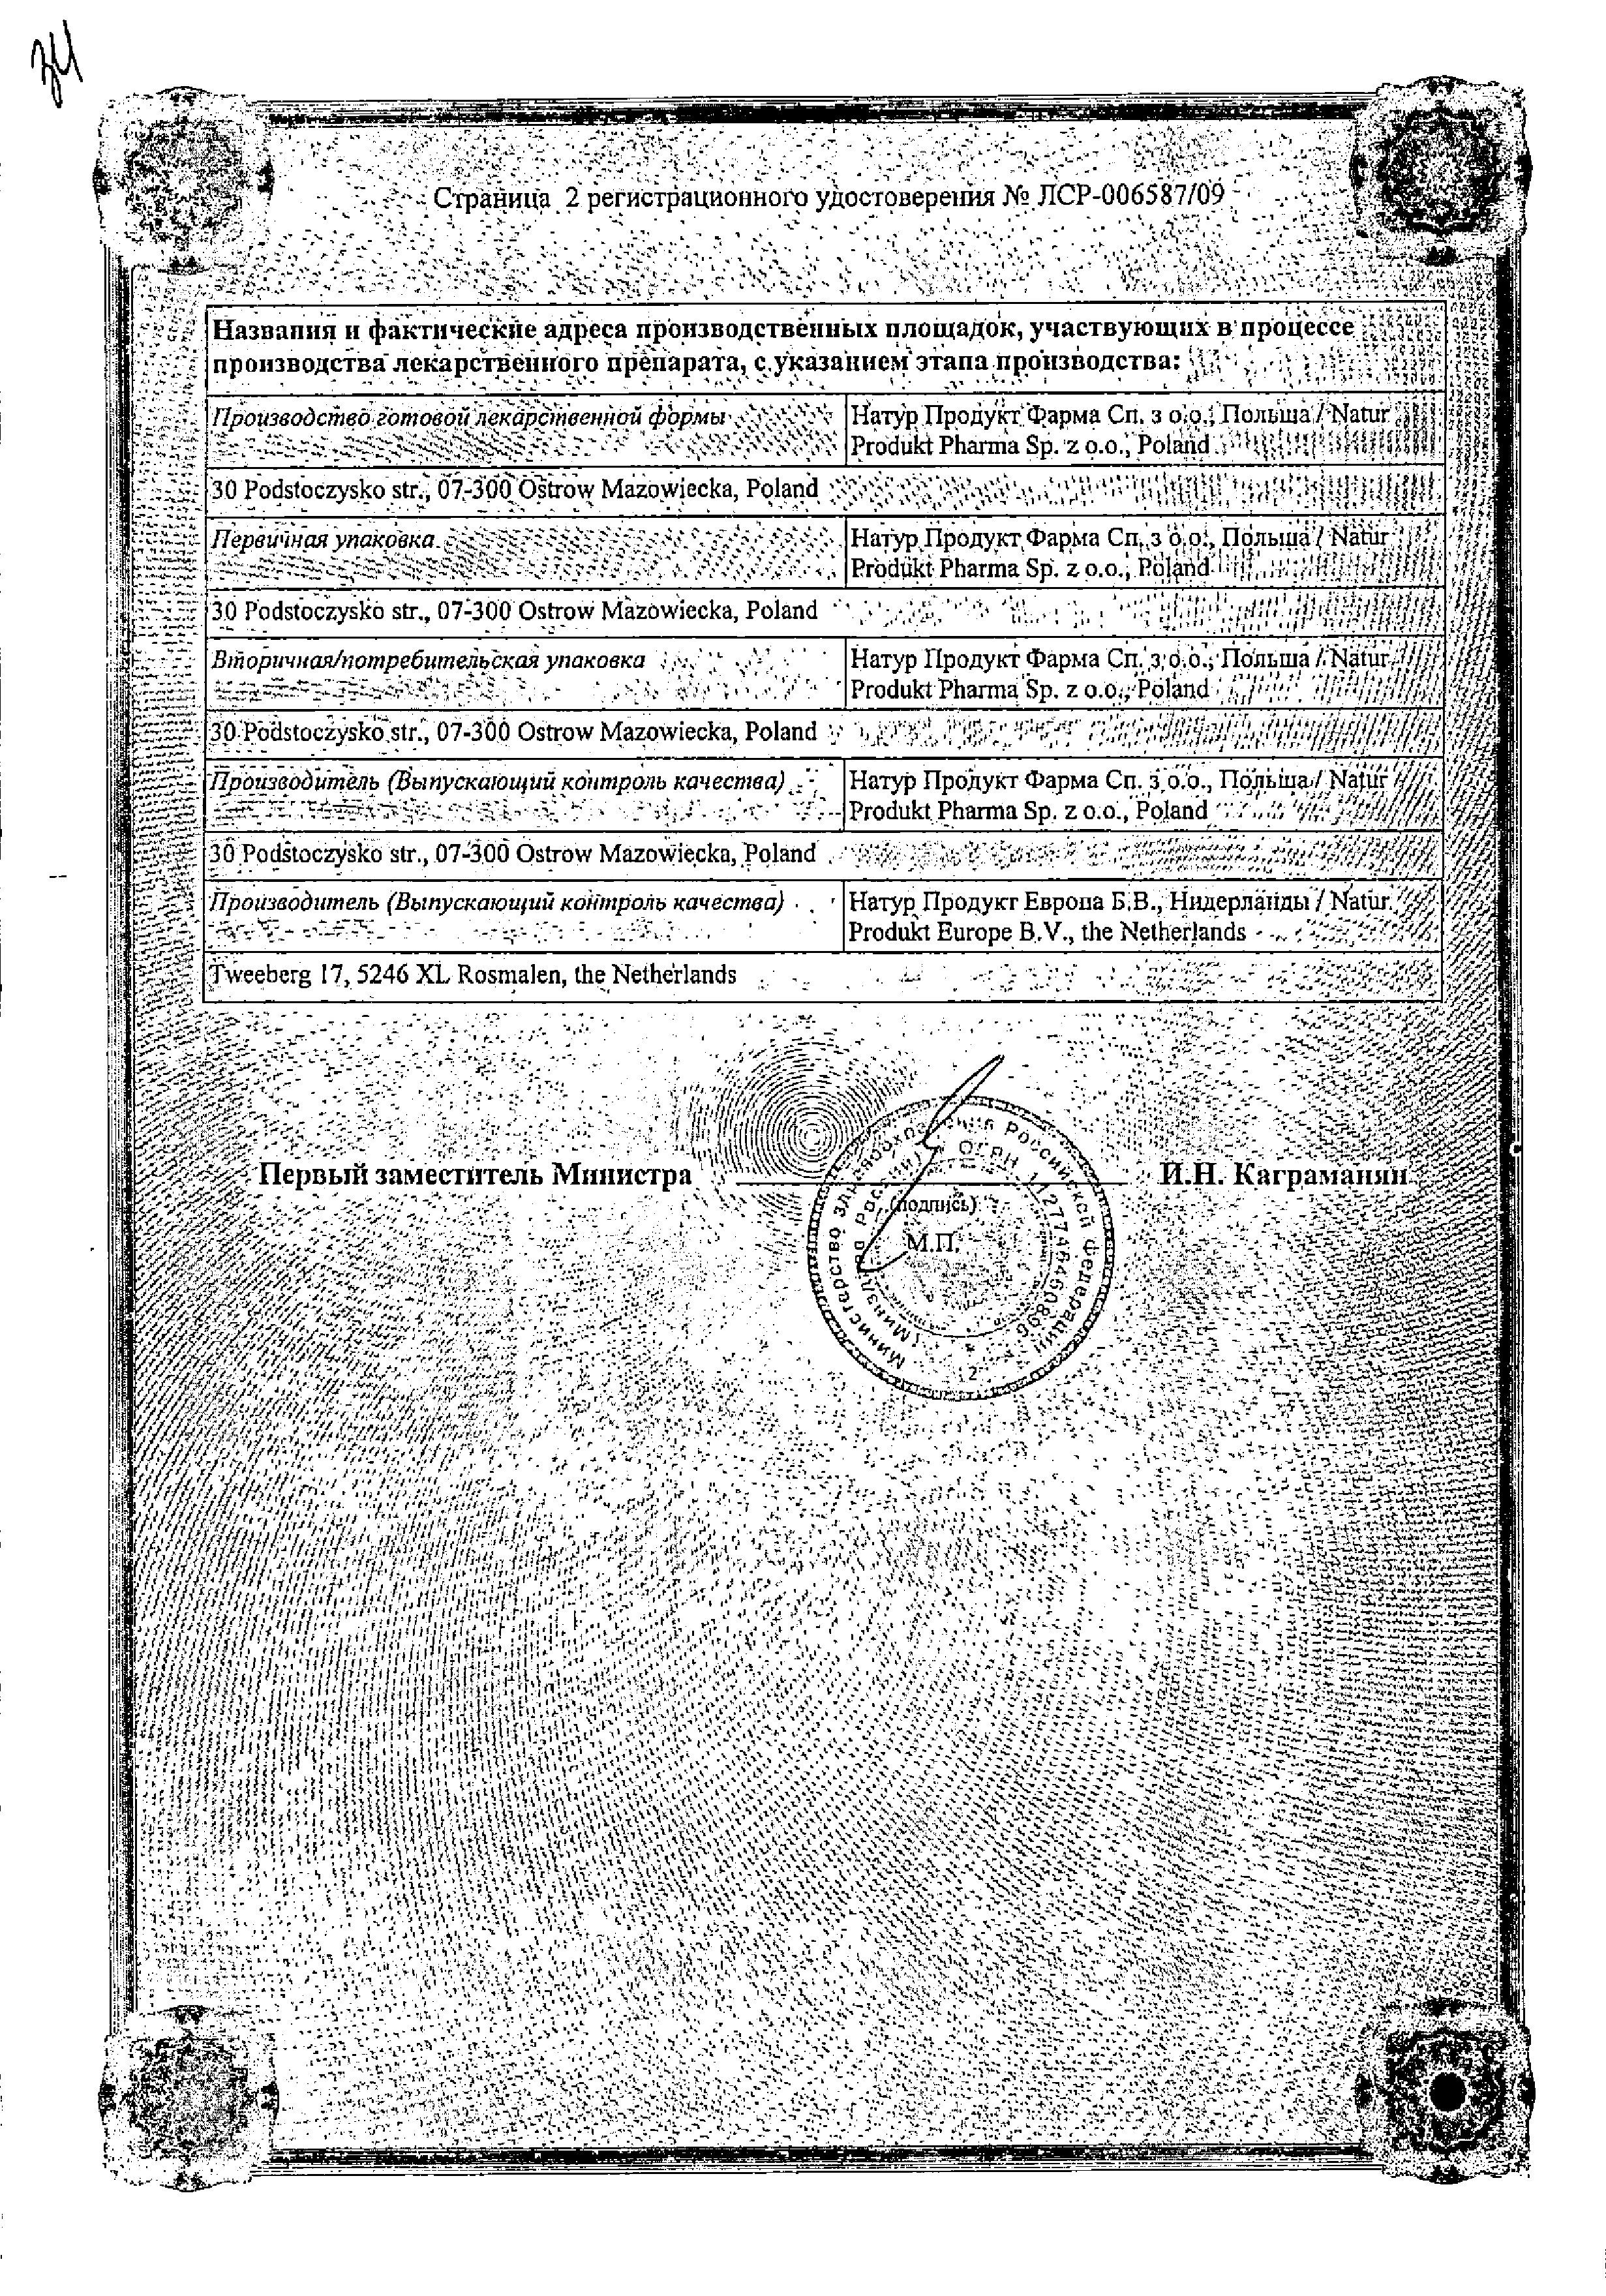 Антигриппин сертификат